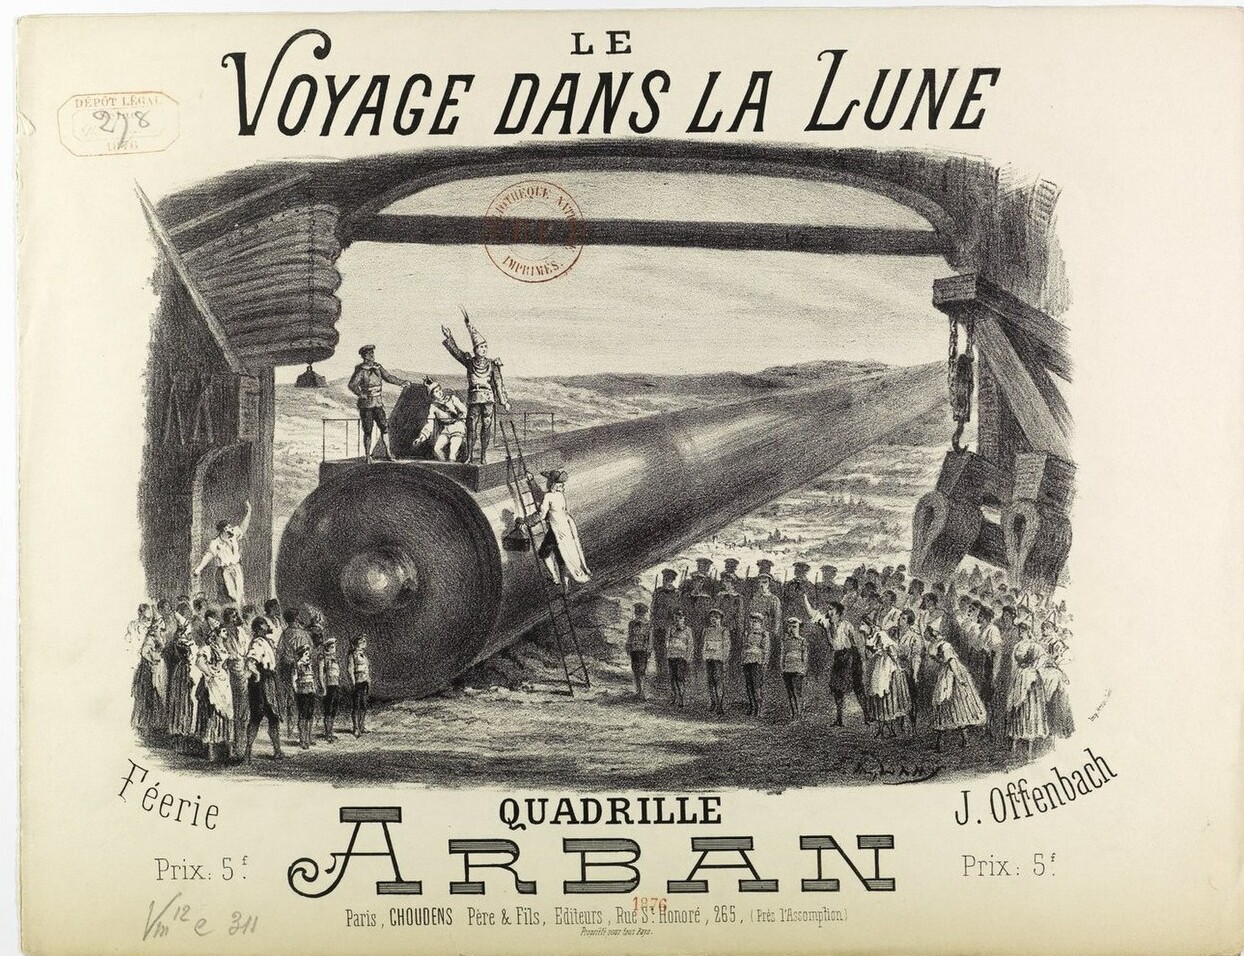 Sheet music cover for "Le Voyage Dans La Lune."